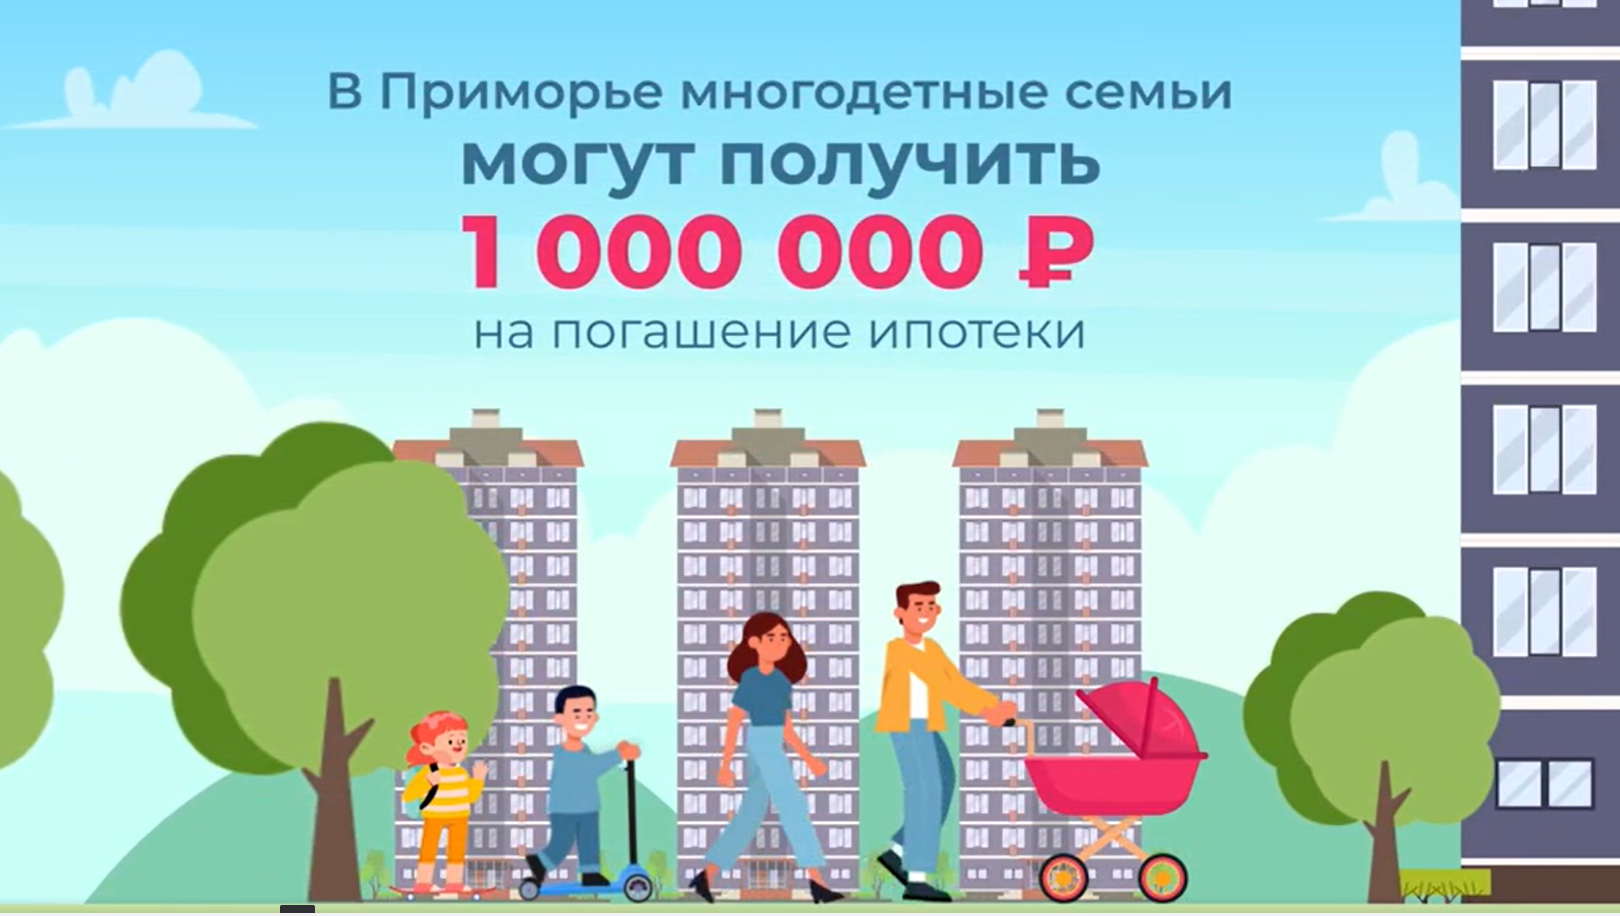 Погашение ипотеки (до 1 миллион рублей) при рождении 3 или последующего ребенка с 01.01.2023.